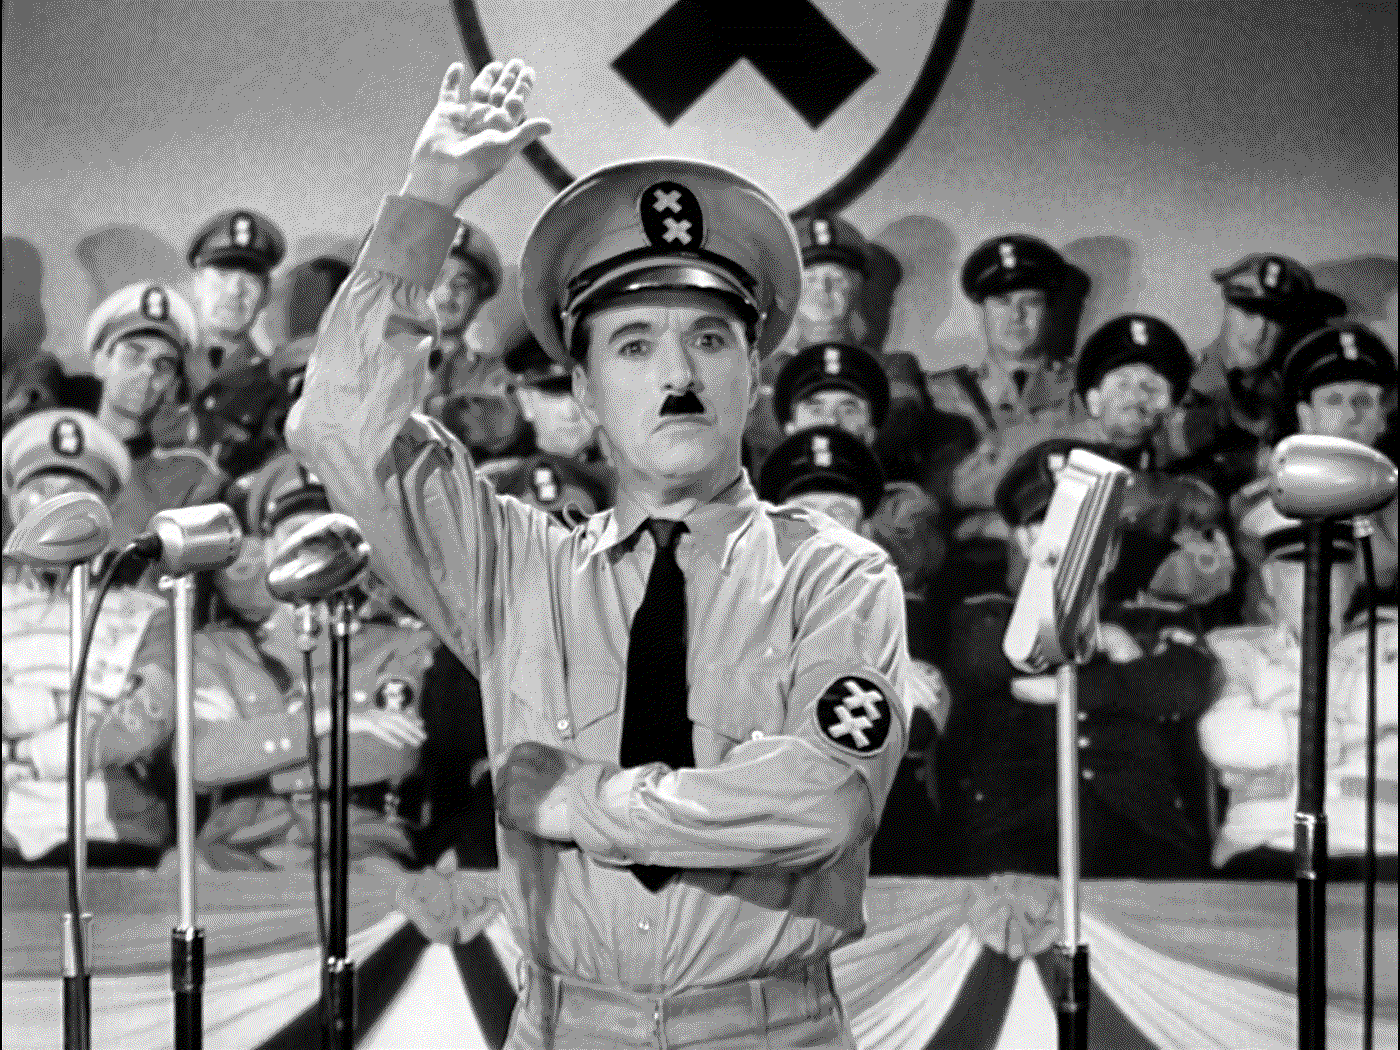 schwarz-weiß Filmstill aus dem Film der große Diktator, indem Charlie Chaplin als Hitler verkleidet ist